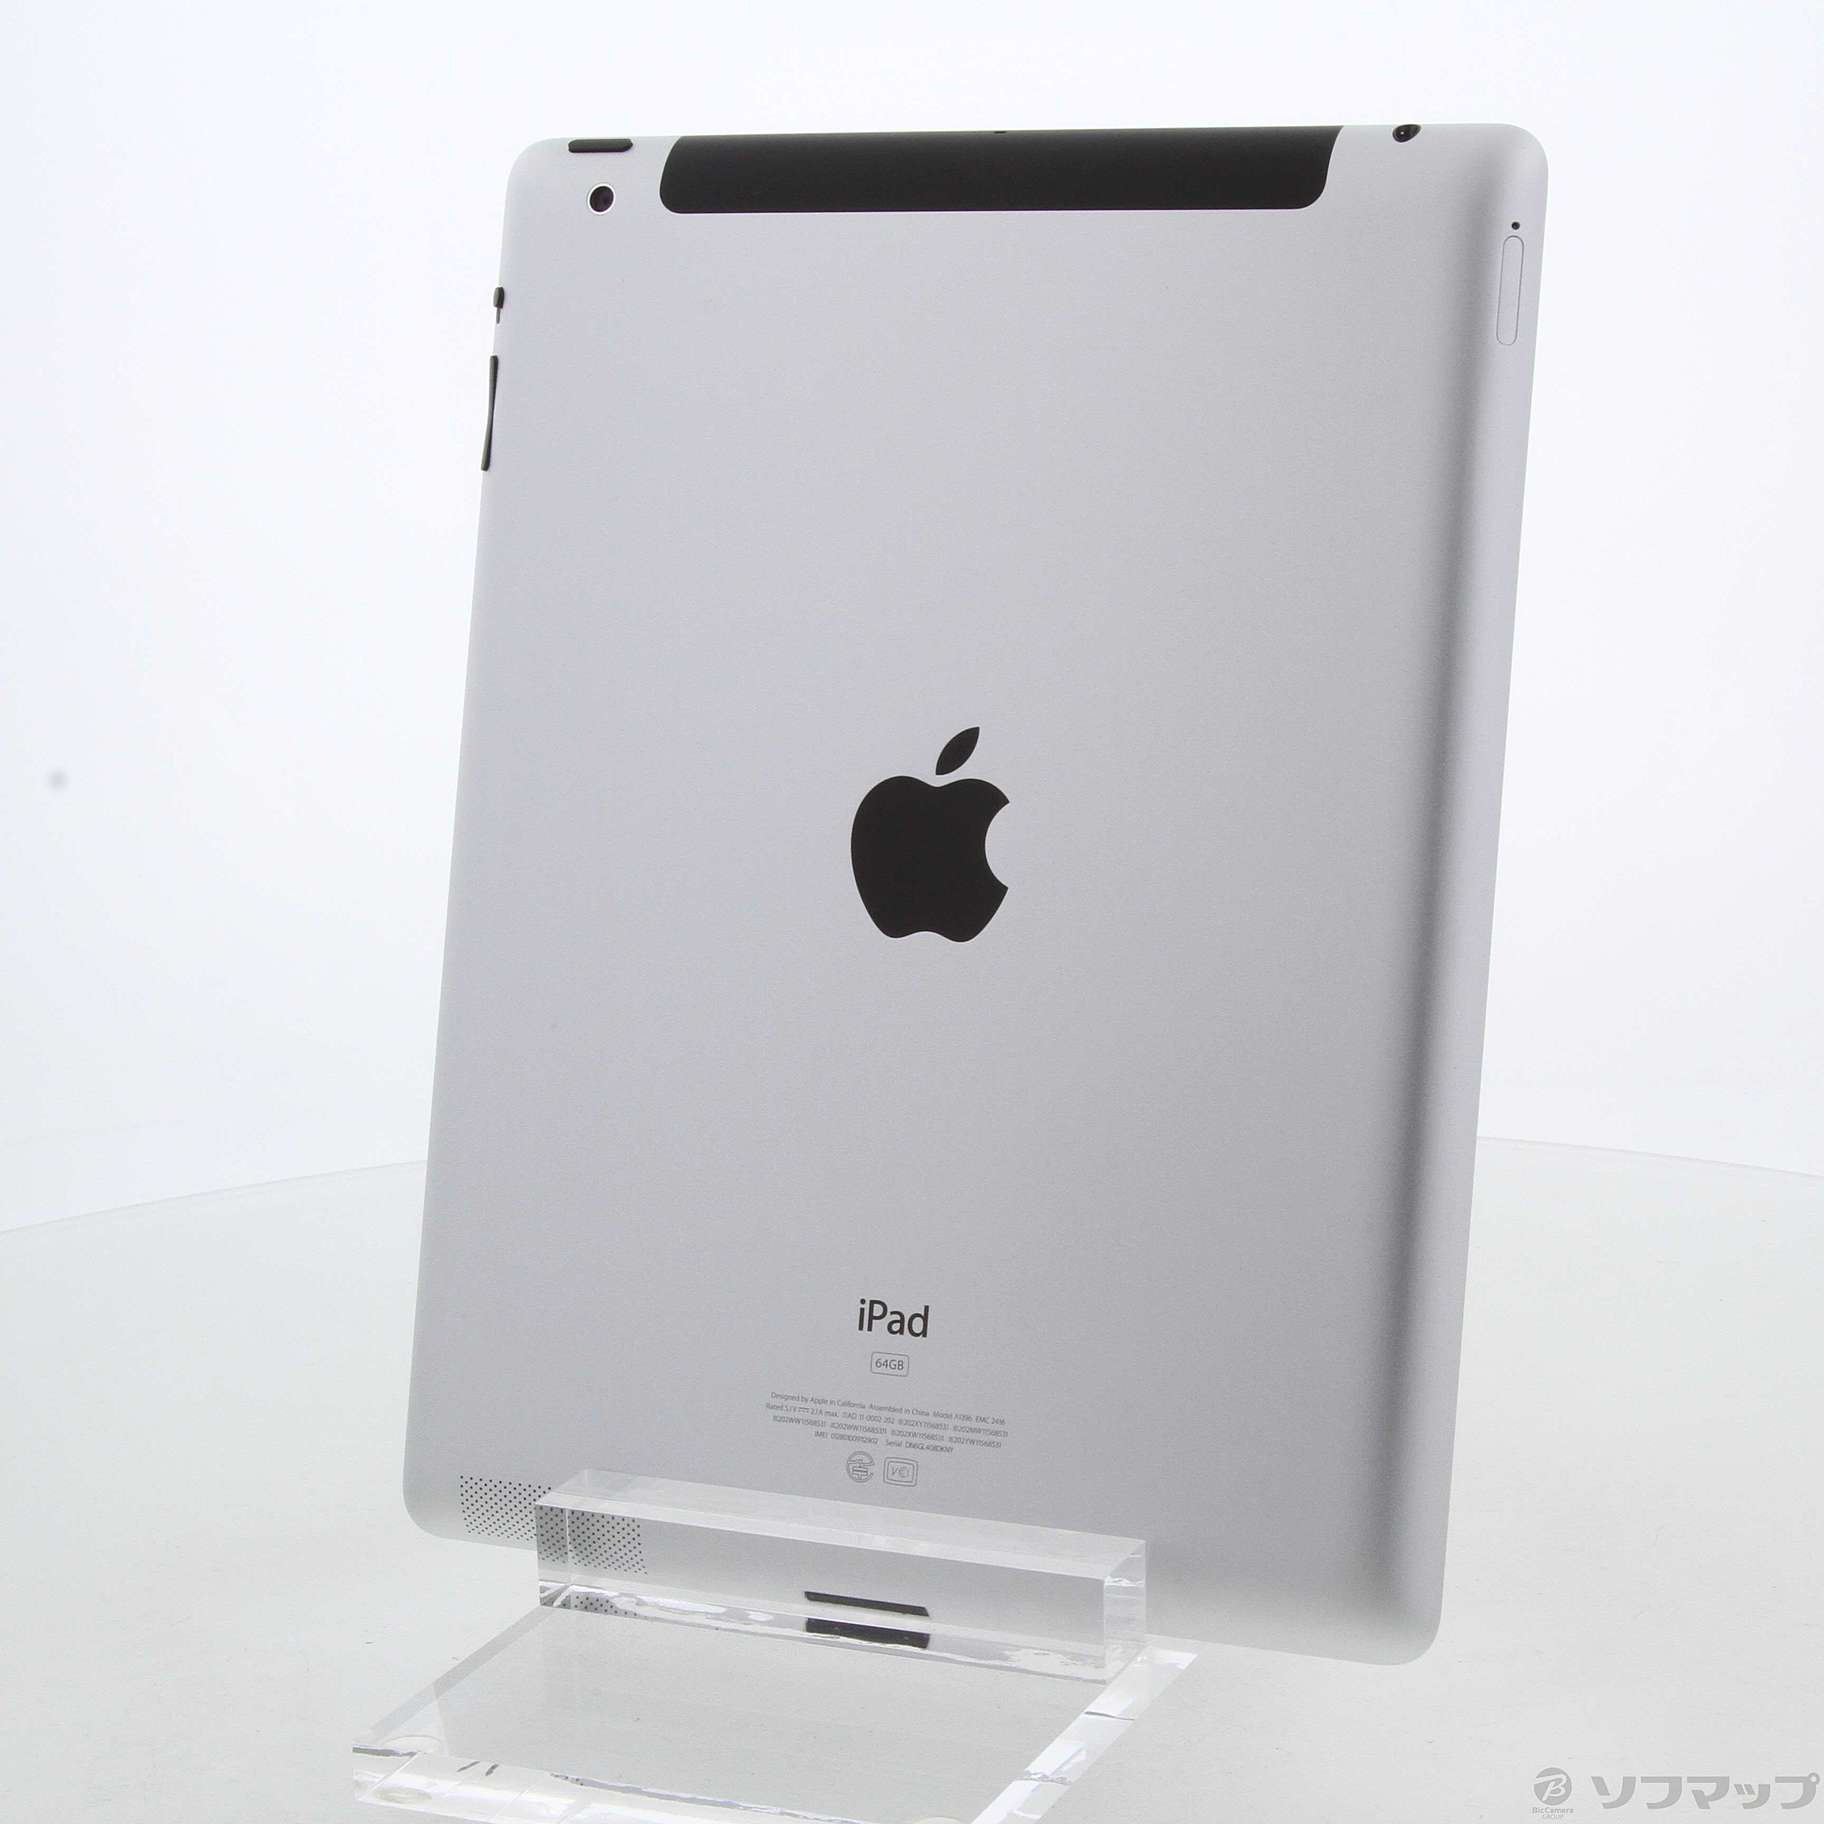 〔〕Apple(アップル) iPad 2 64GB